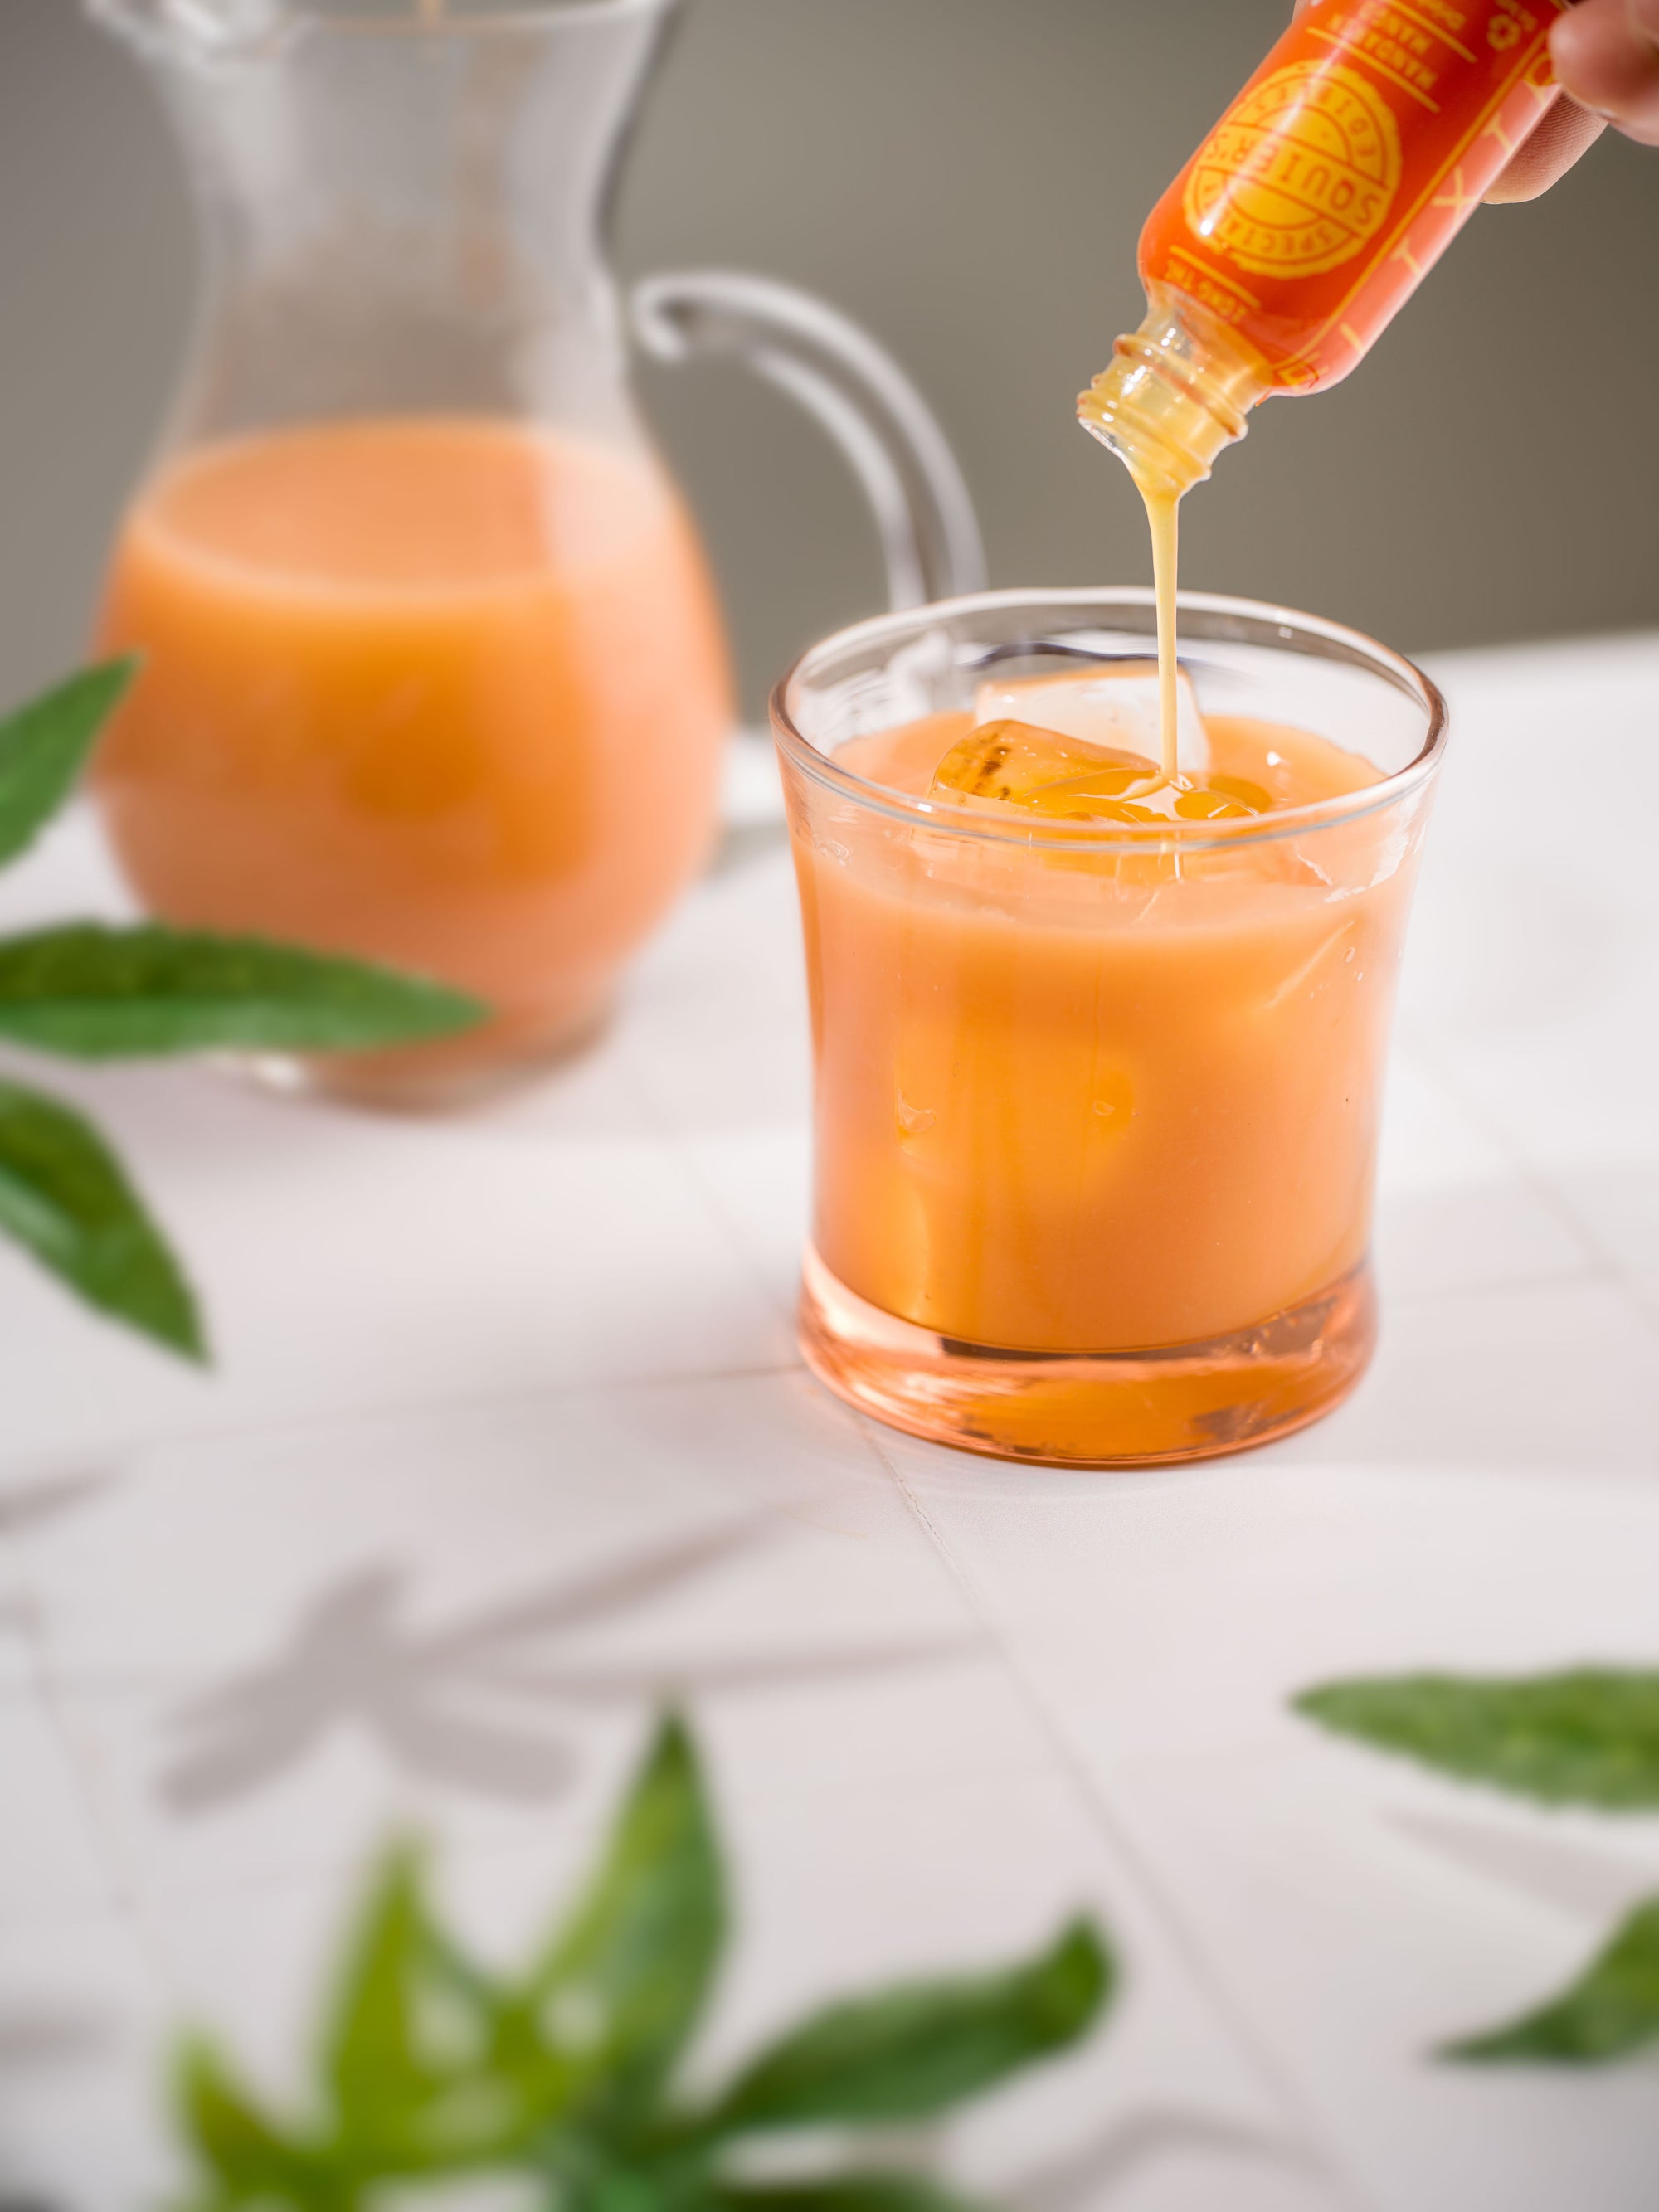 Mandarin Mango Elixir